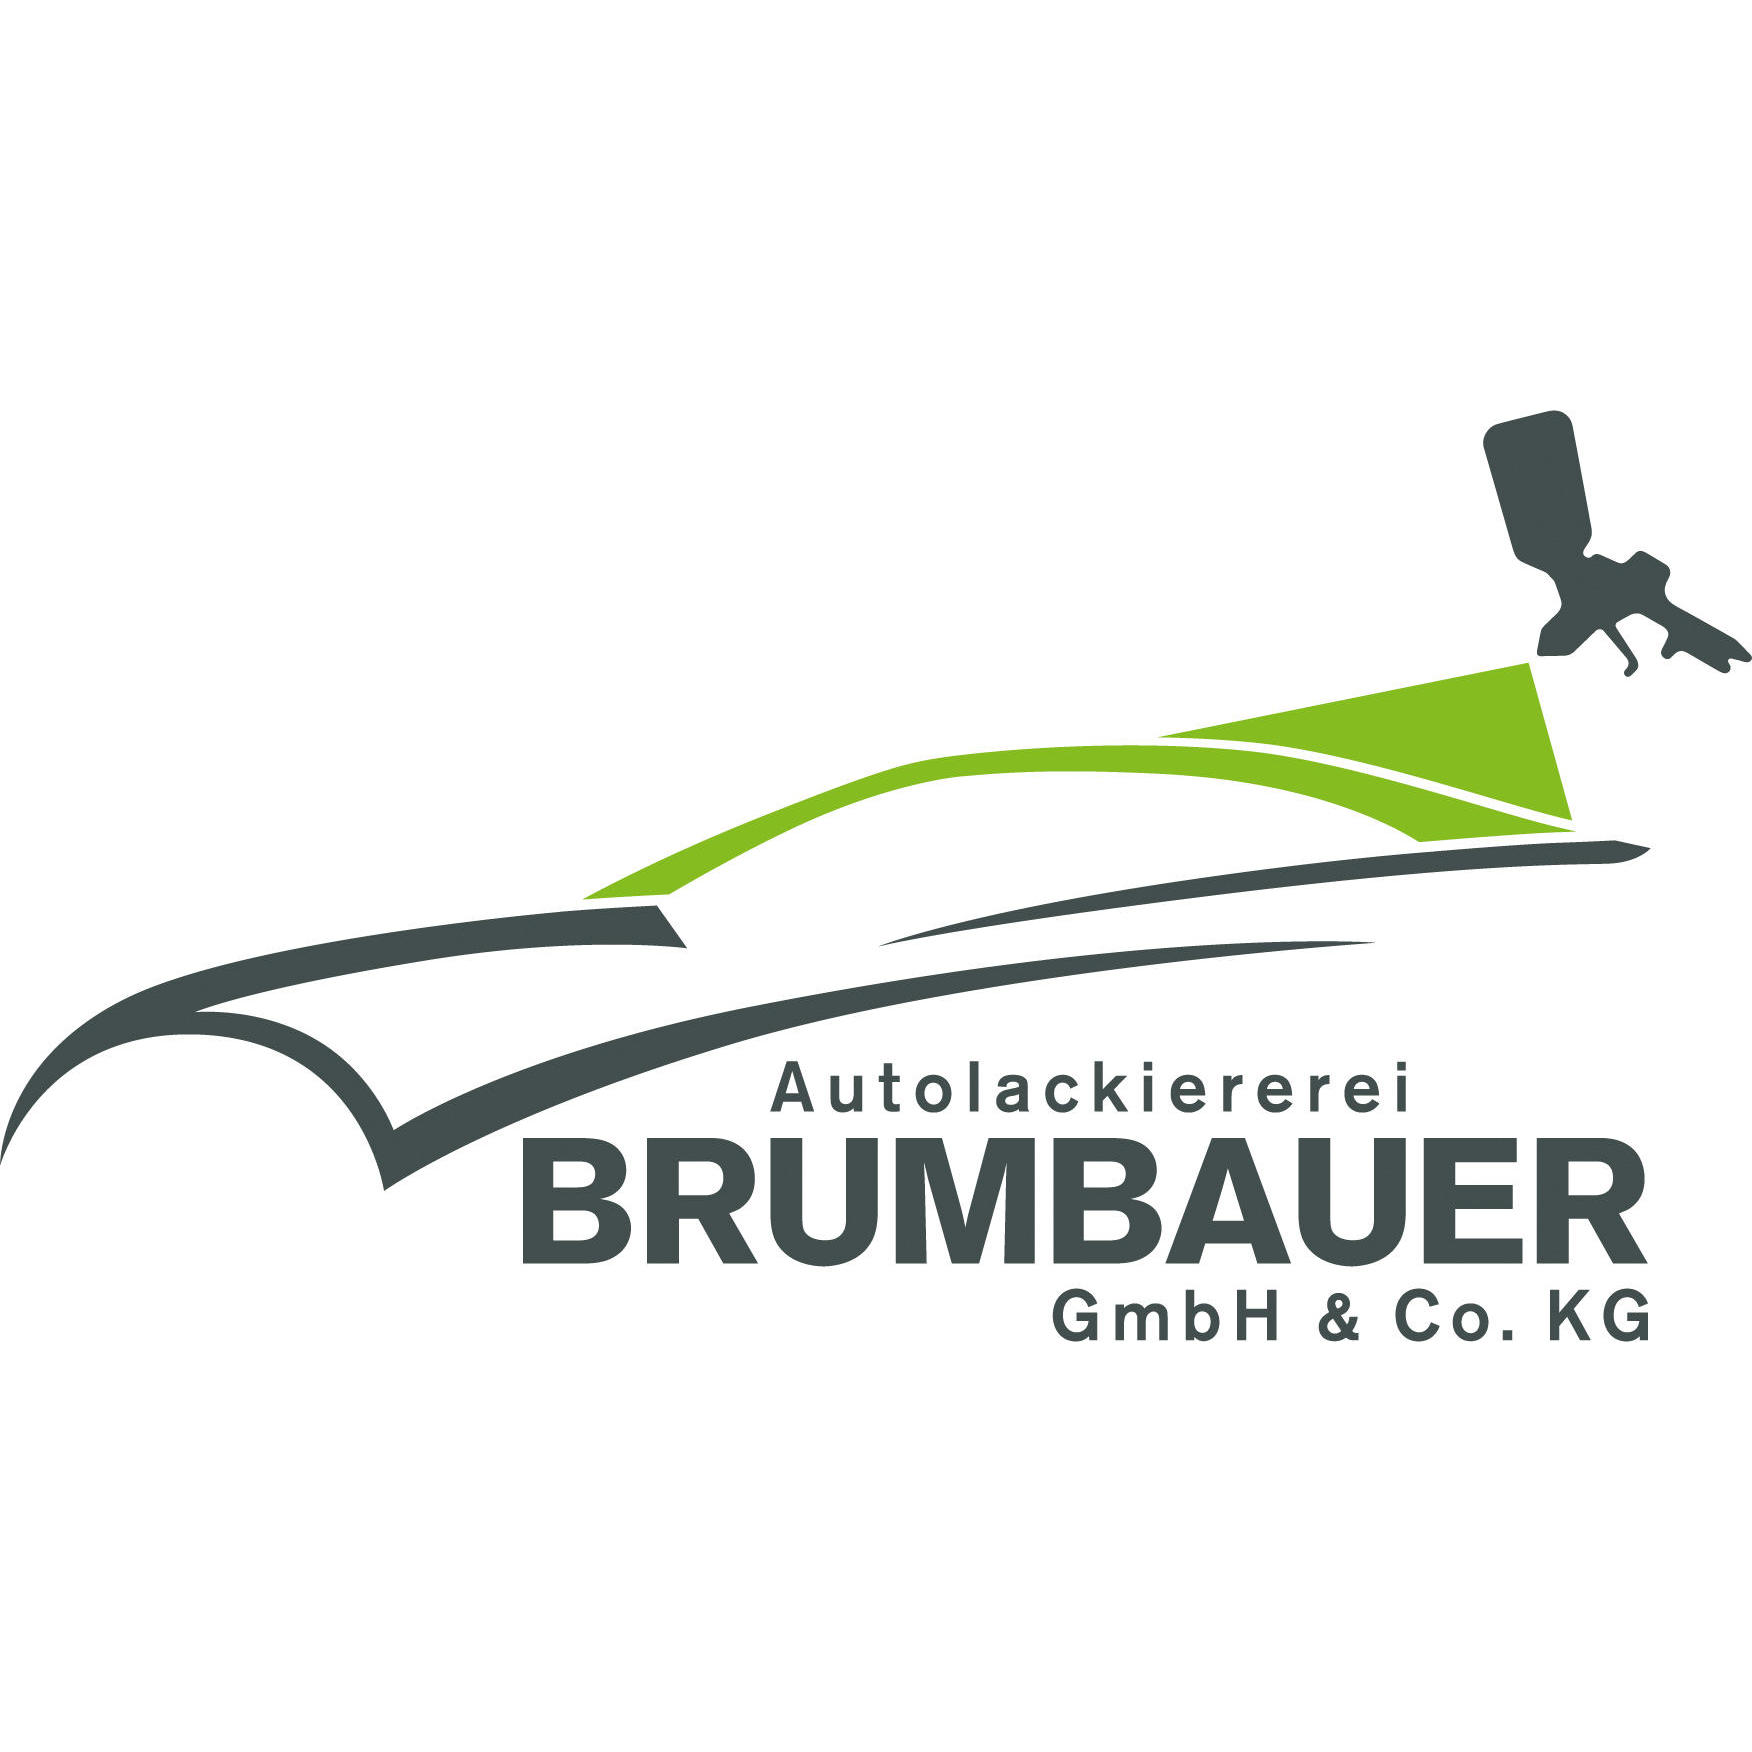 GmbH & Co. KG Autolackiererei Brumbauer in Regenstauf - Logo